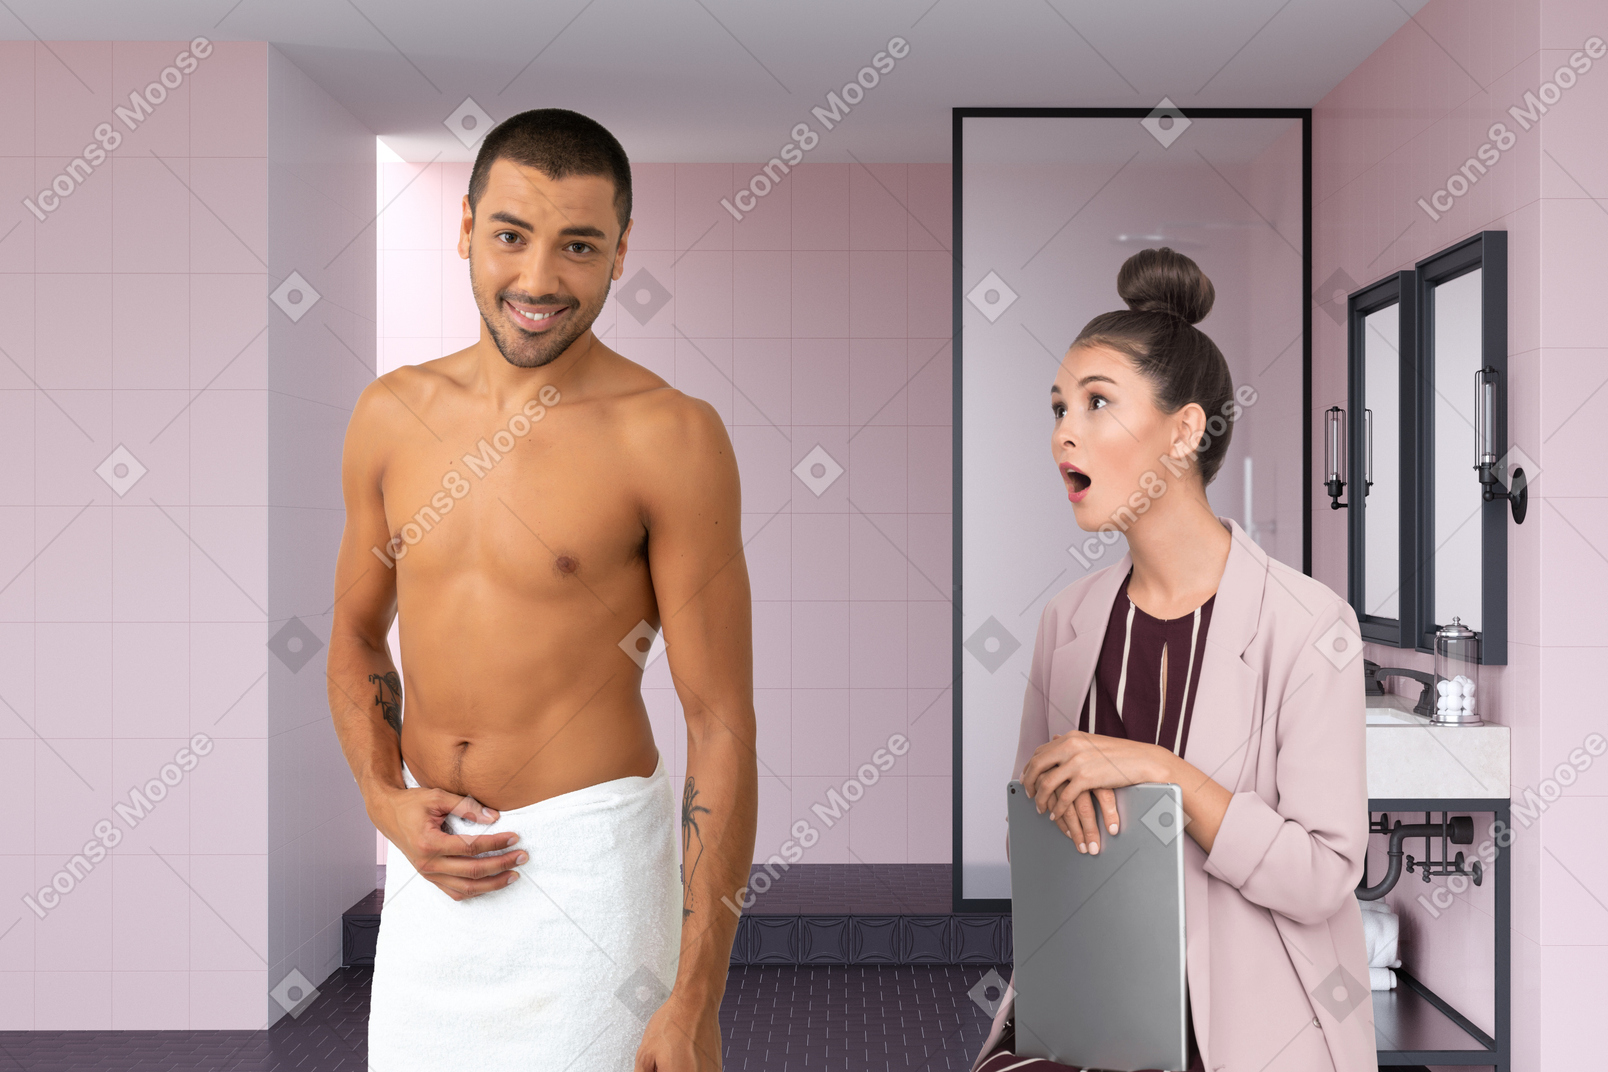 Surprised woman looking at half naked man in bathroom